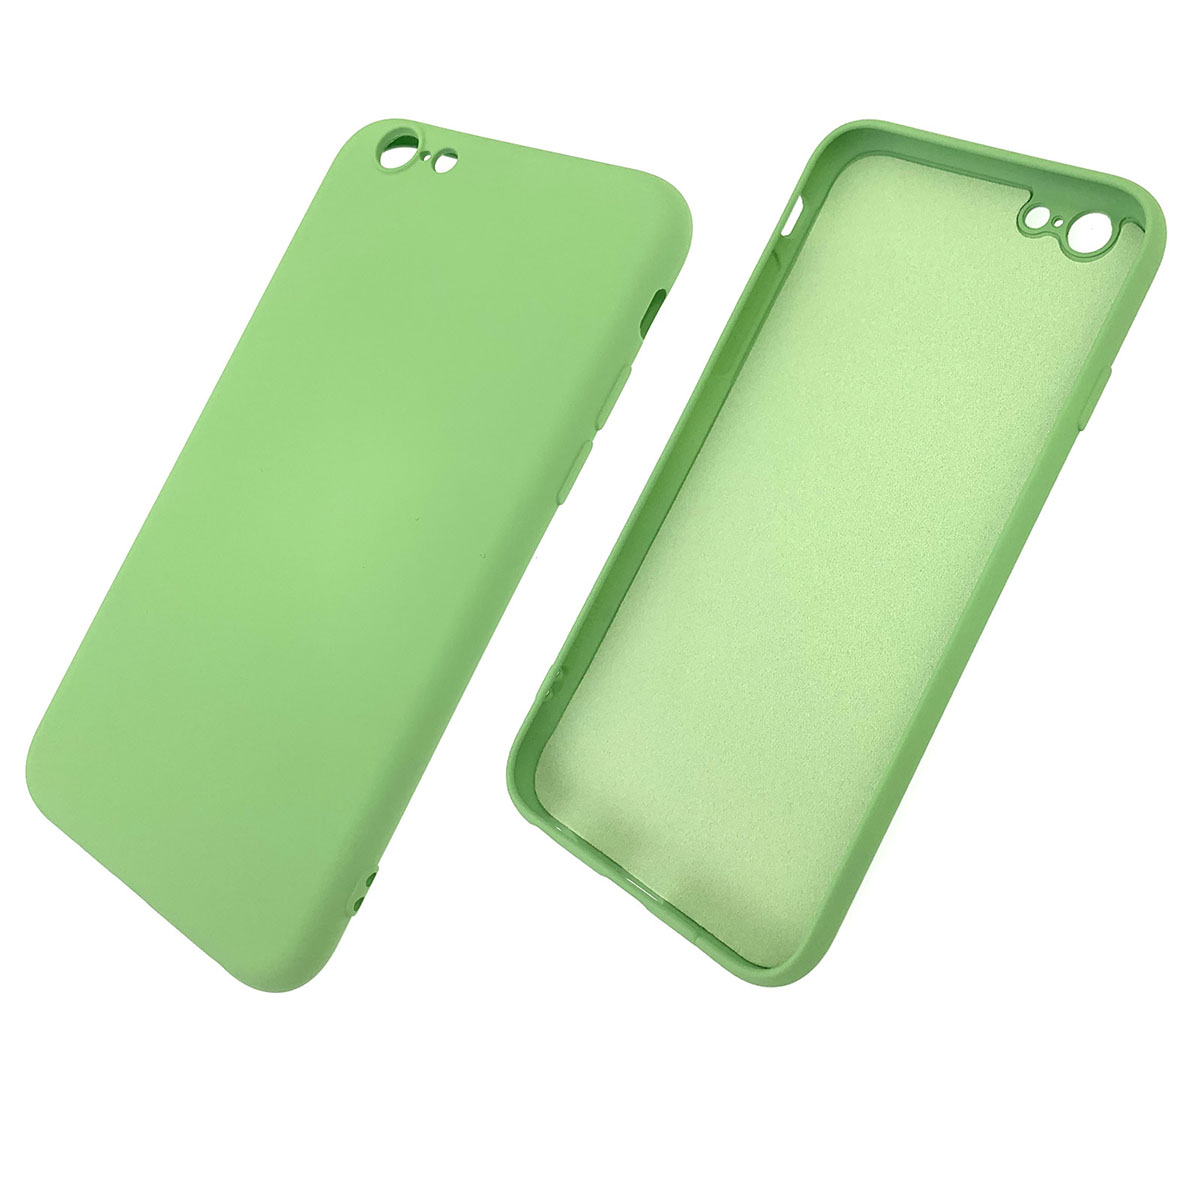 Чехол накладка для APPLE iPhone 6, 6G, 6S, силикон, цвет фисташковый.